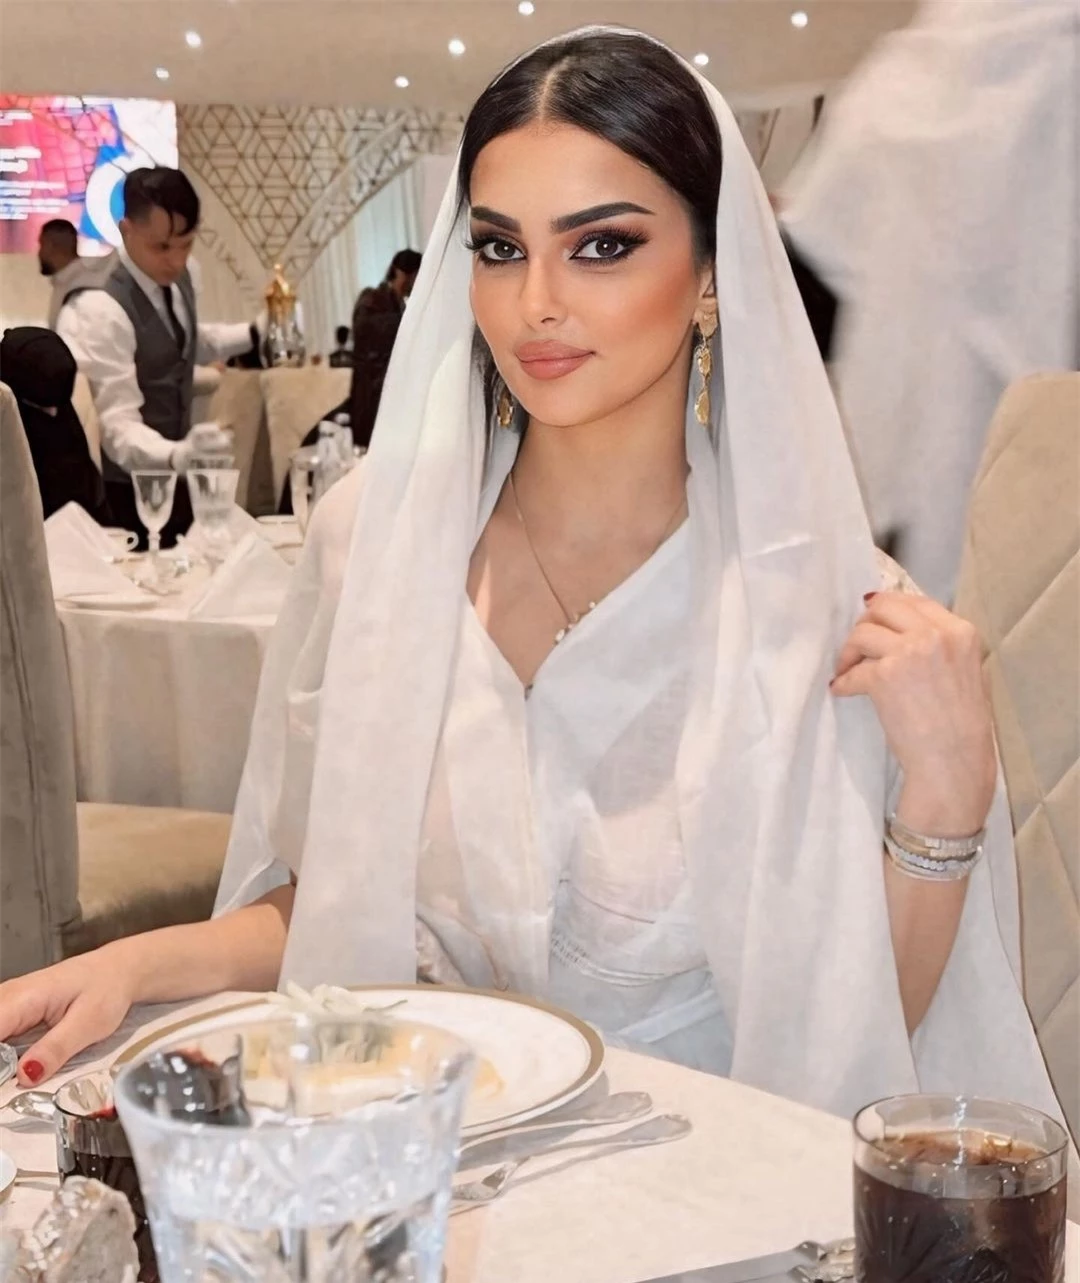 Nhan sắc gây tranh cãi của người đẹp Saudi Arabia đầu tiên thi Hoa hậu Hoàn vũ ảnh 9